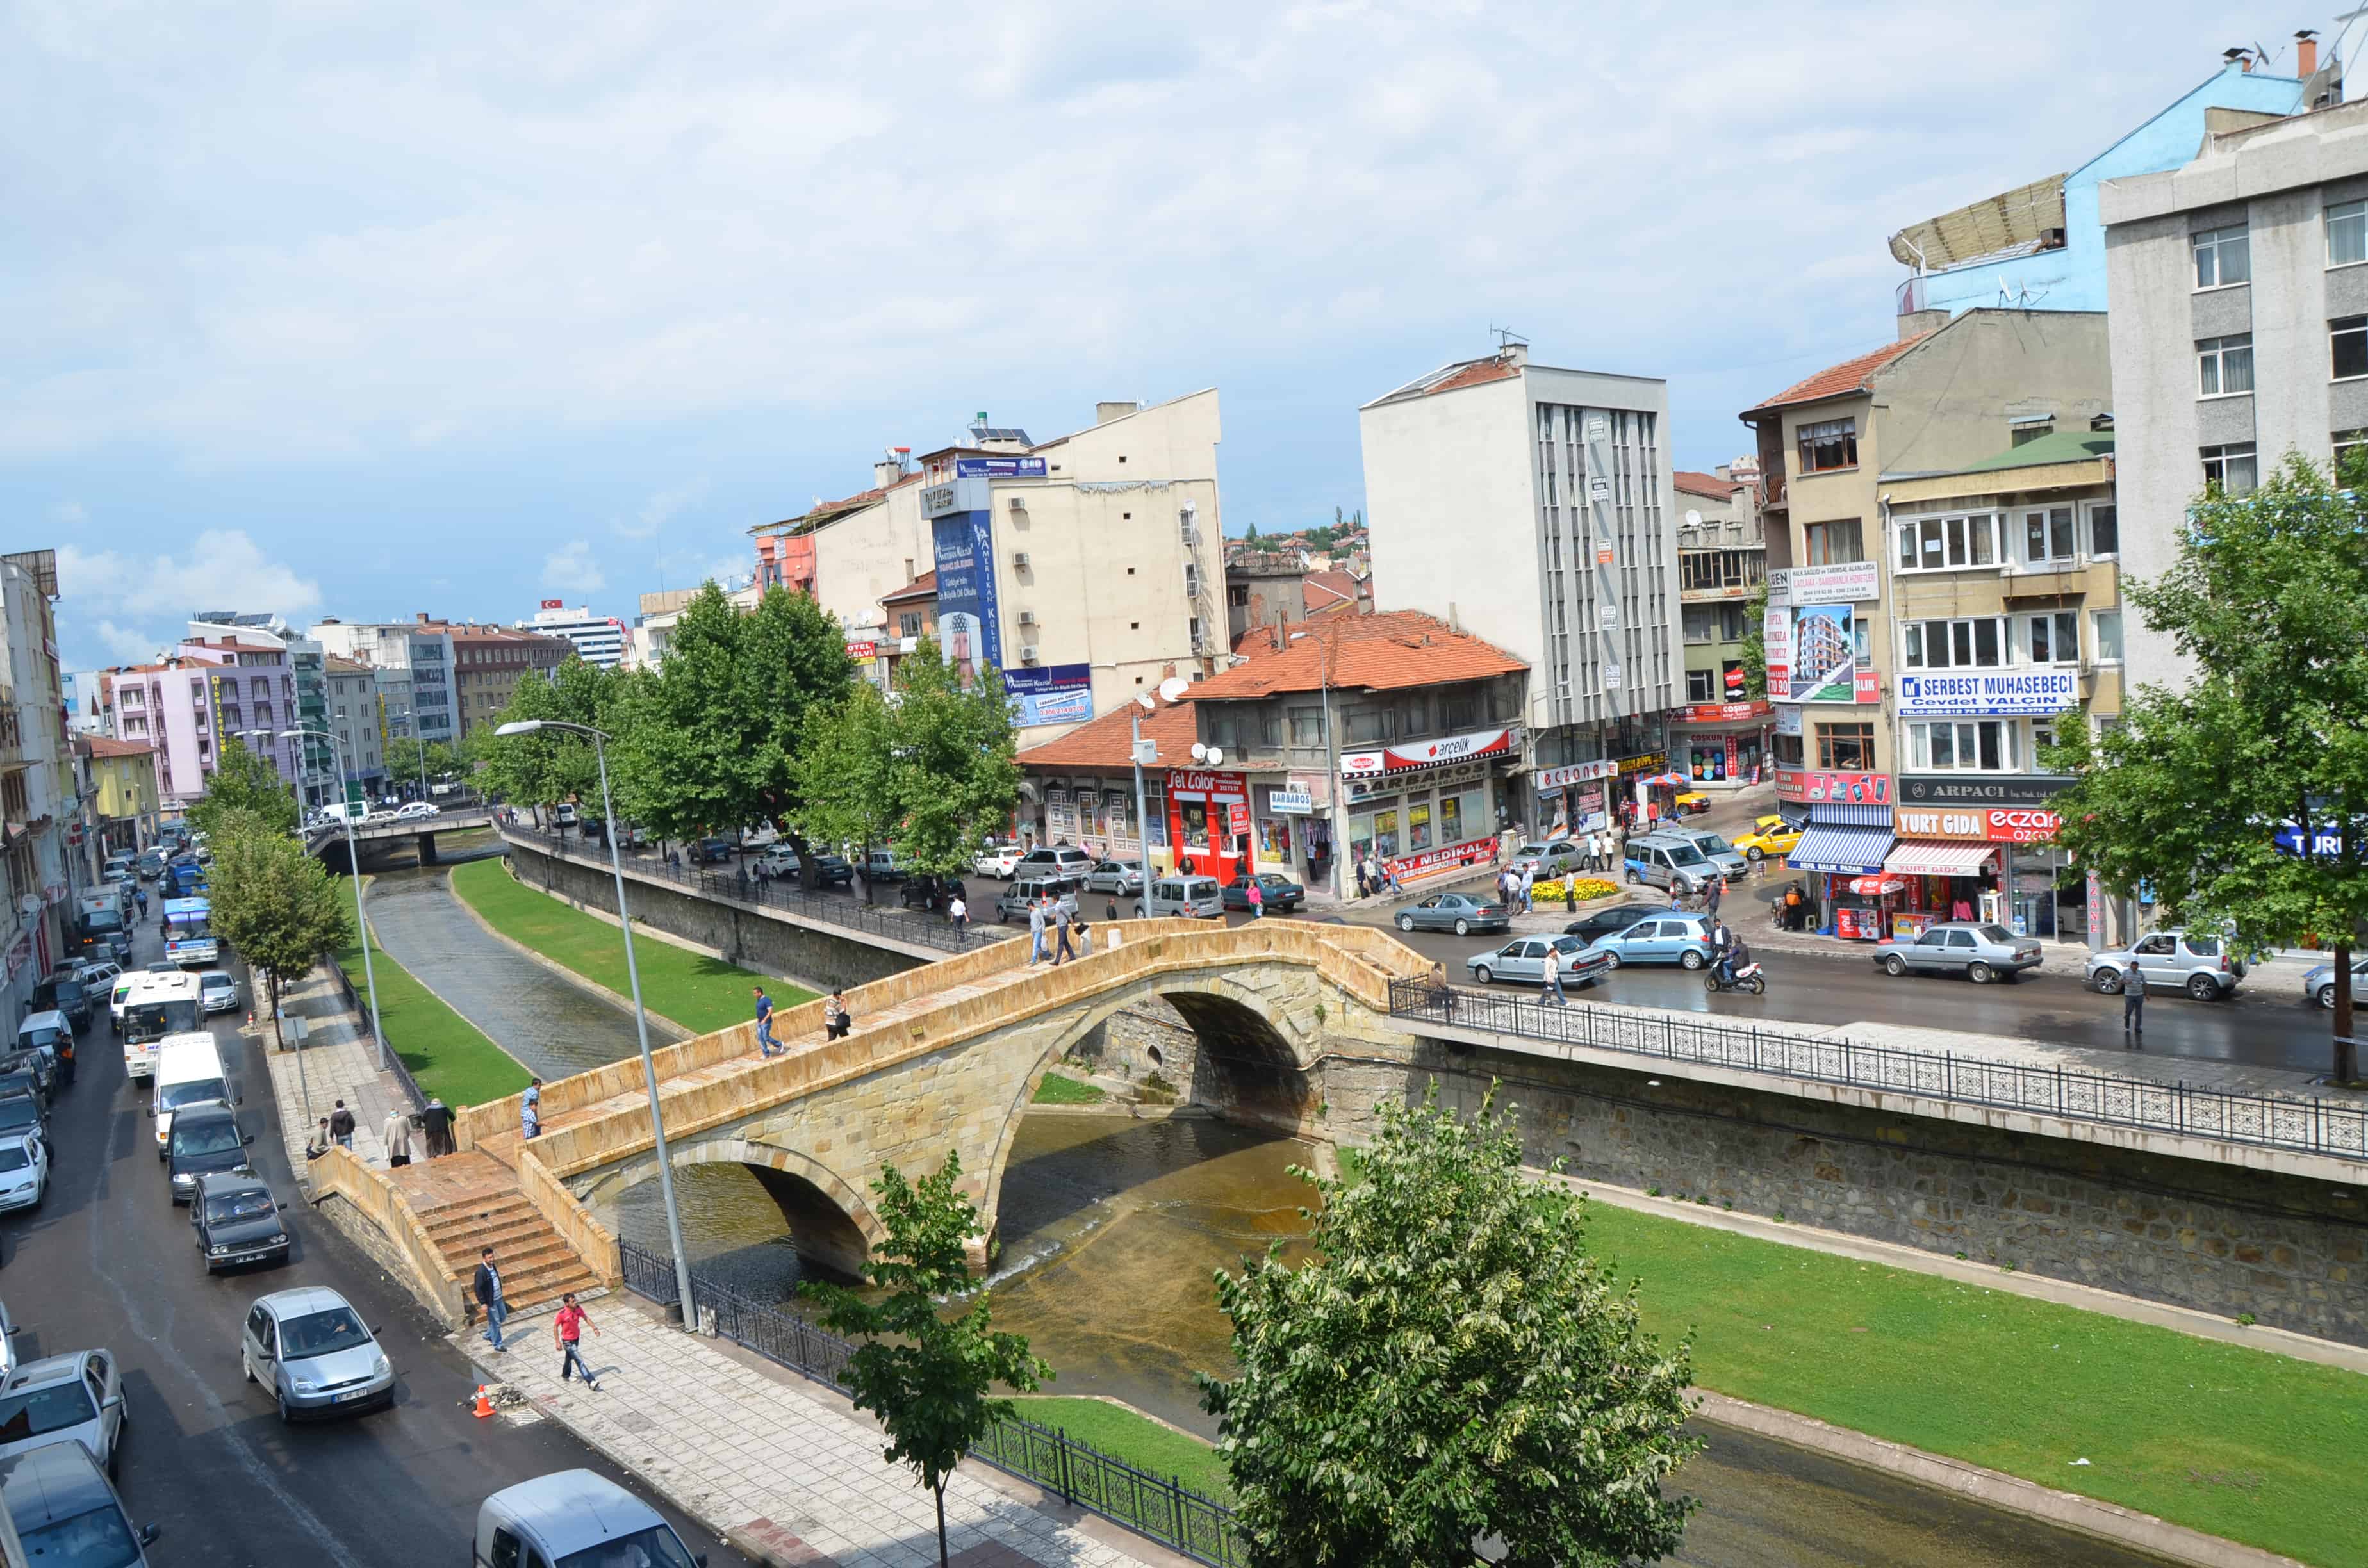 Nasrullah Köprüsü in Kastamonu, Turkey